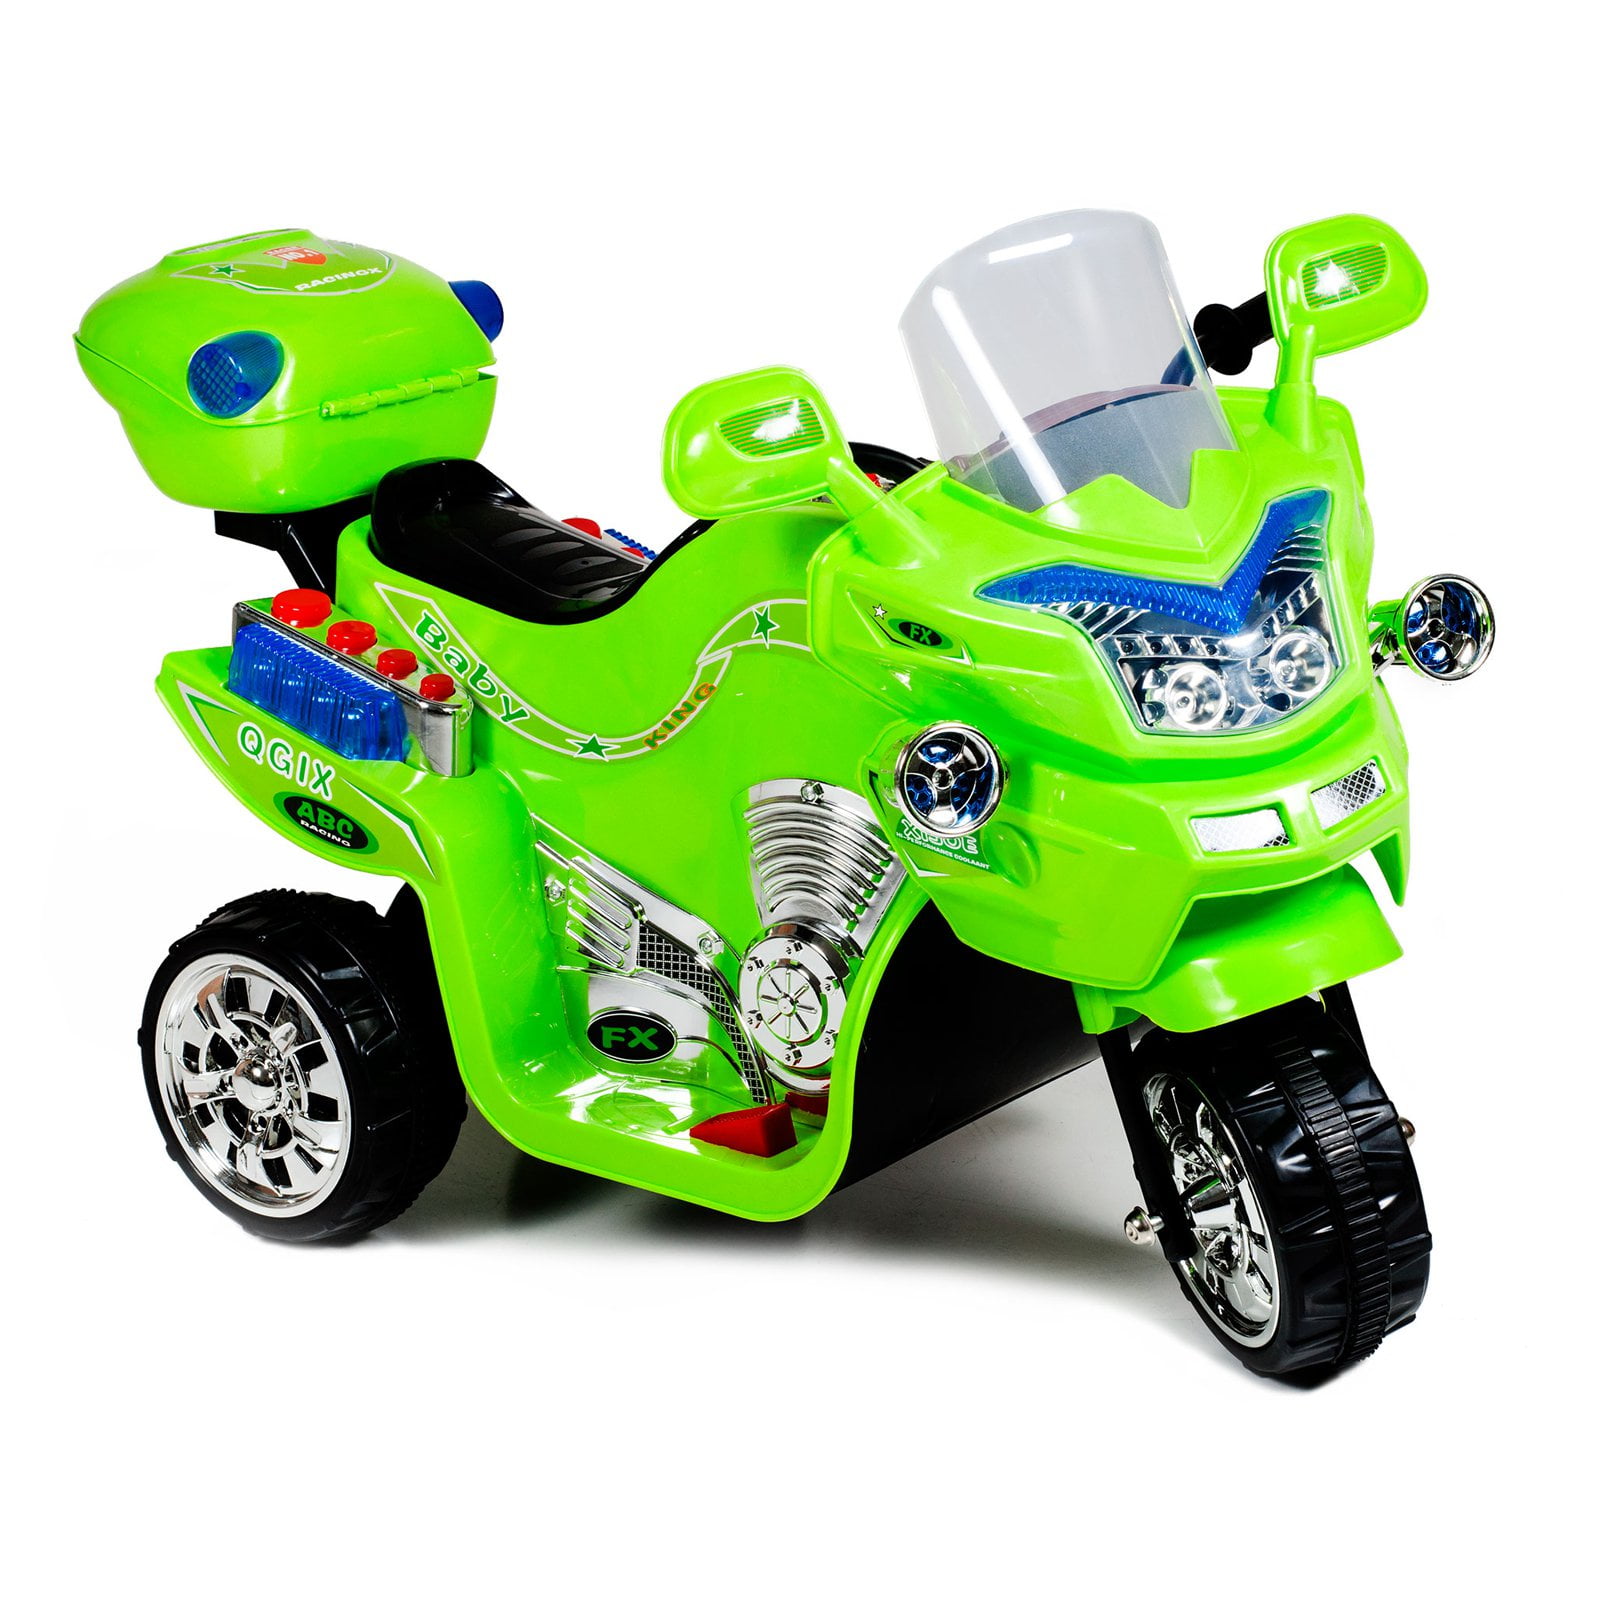 Mechanix 3in1 Motorbike Kit Block Tech Kids Toy 2017 for sale online 